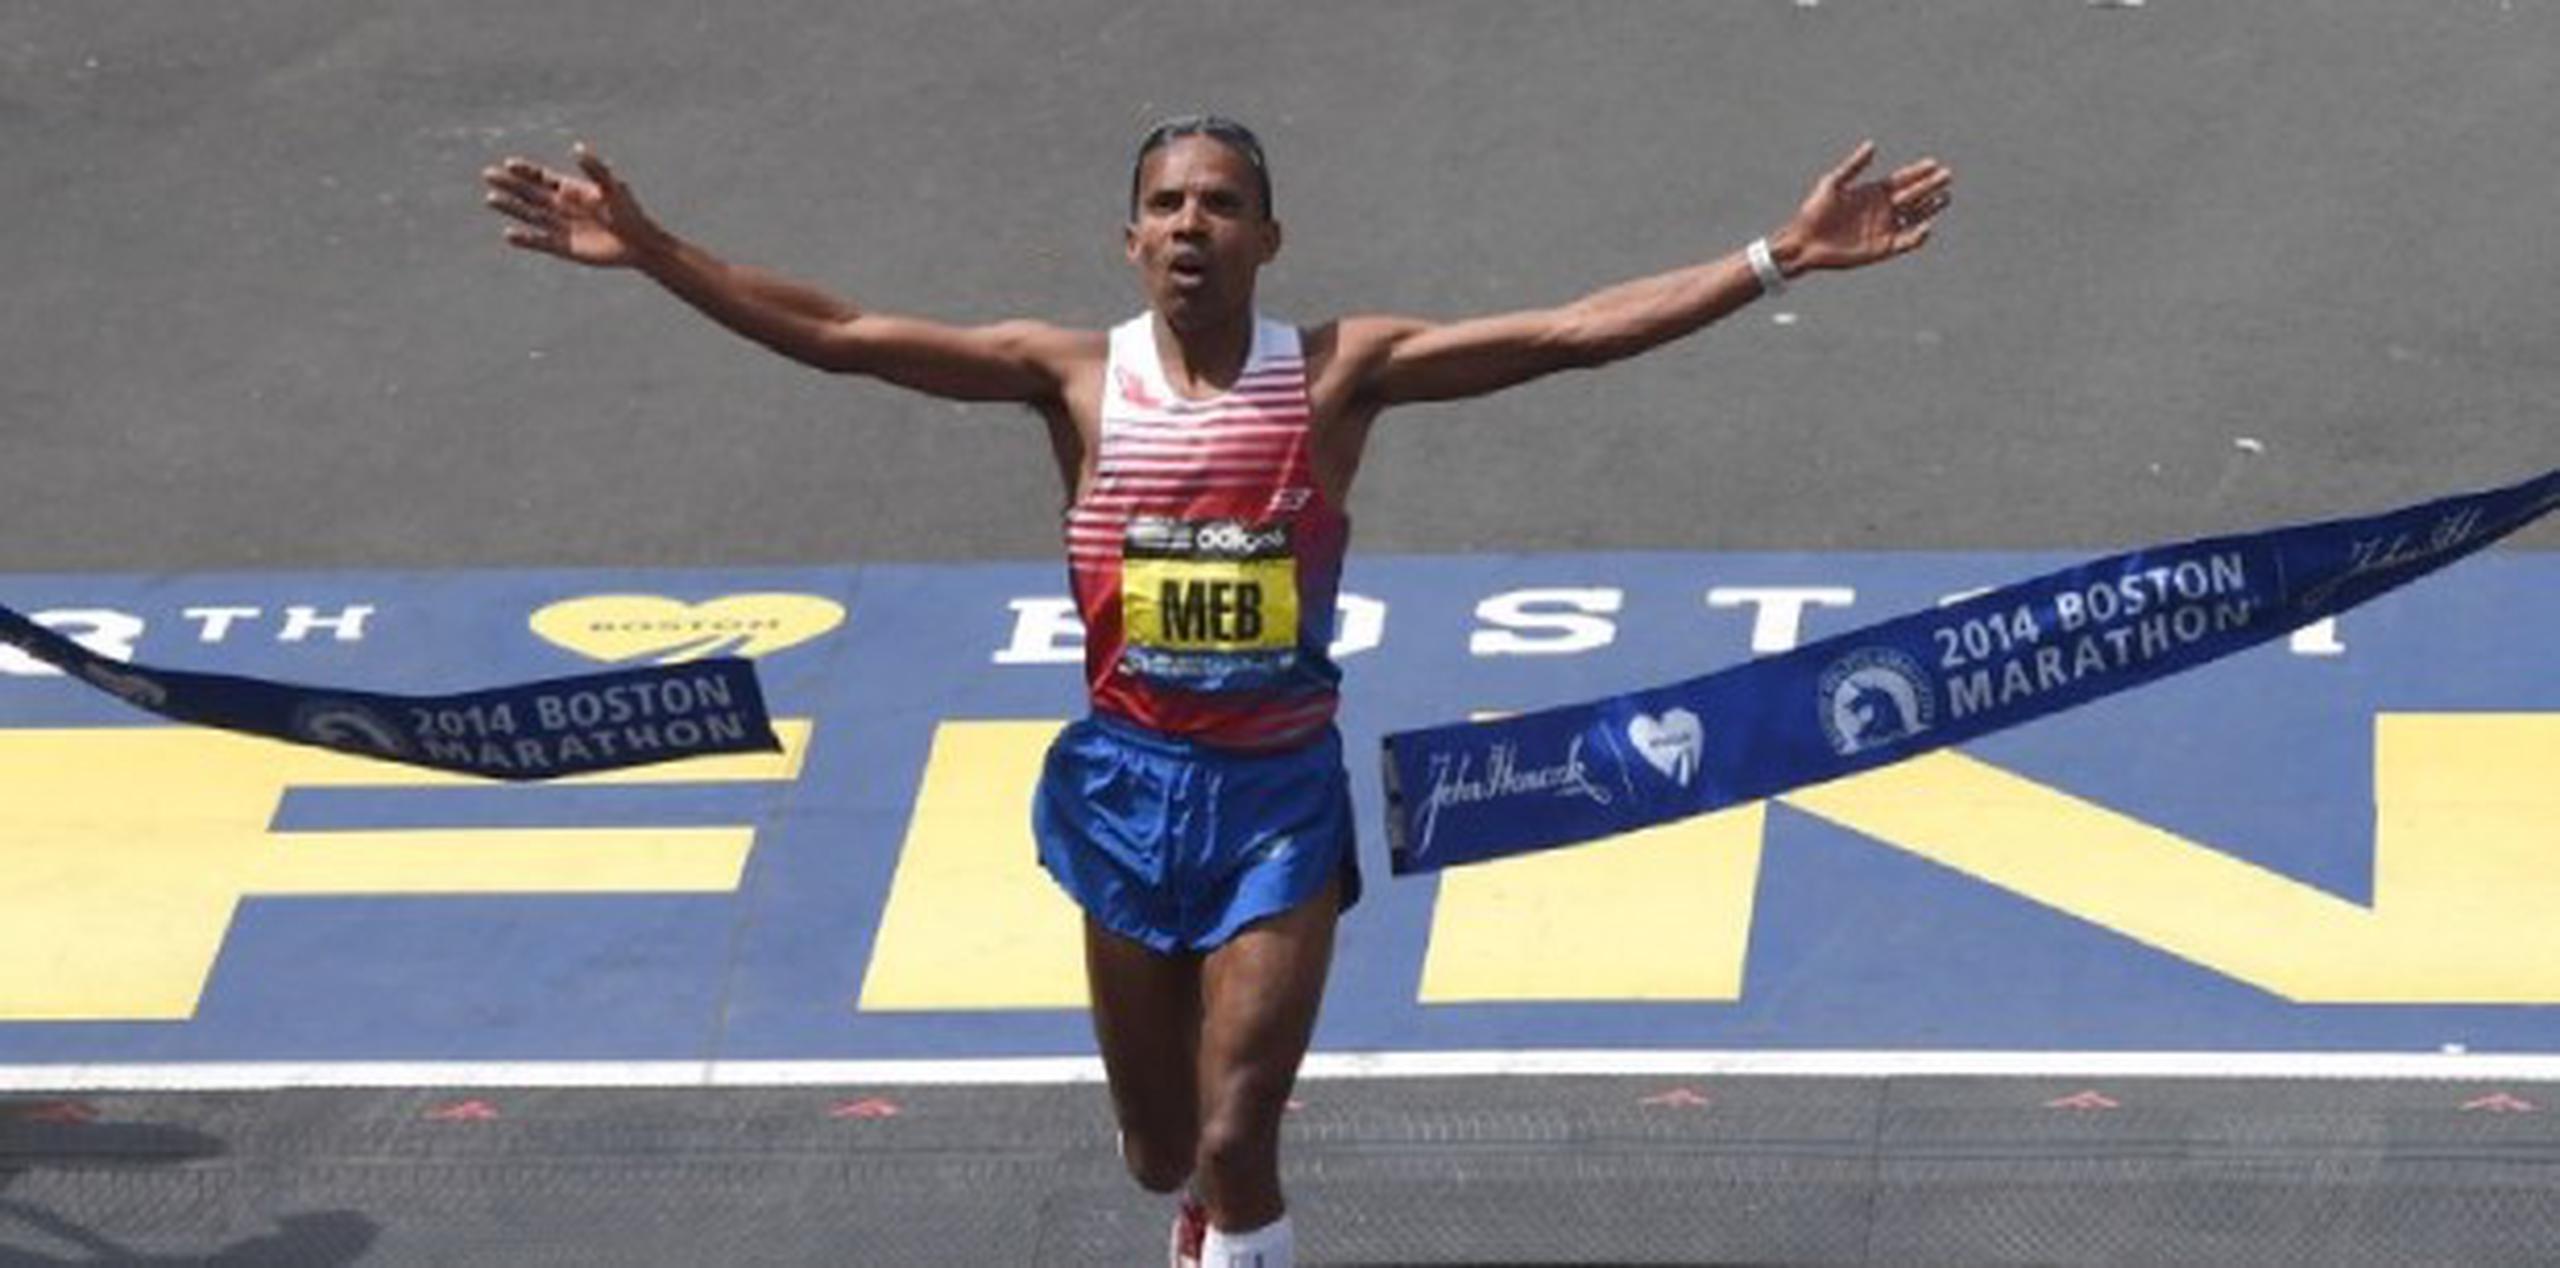 Es el primer atleta estadounidense que gana la carrera desde la década del 80. (AFP PHOTO / Timothy A. CLARY)